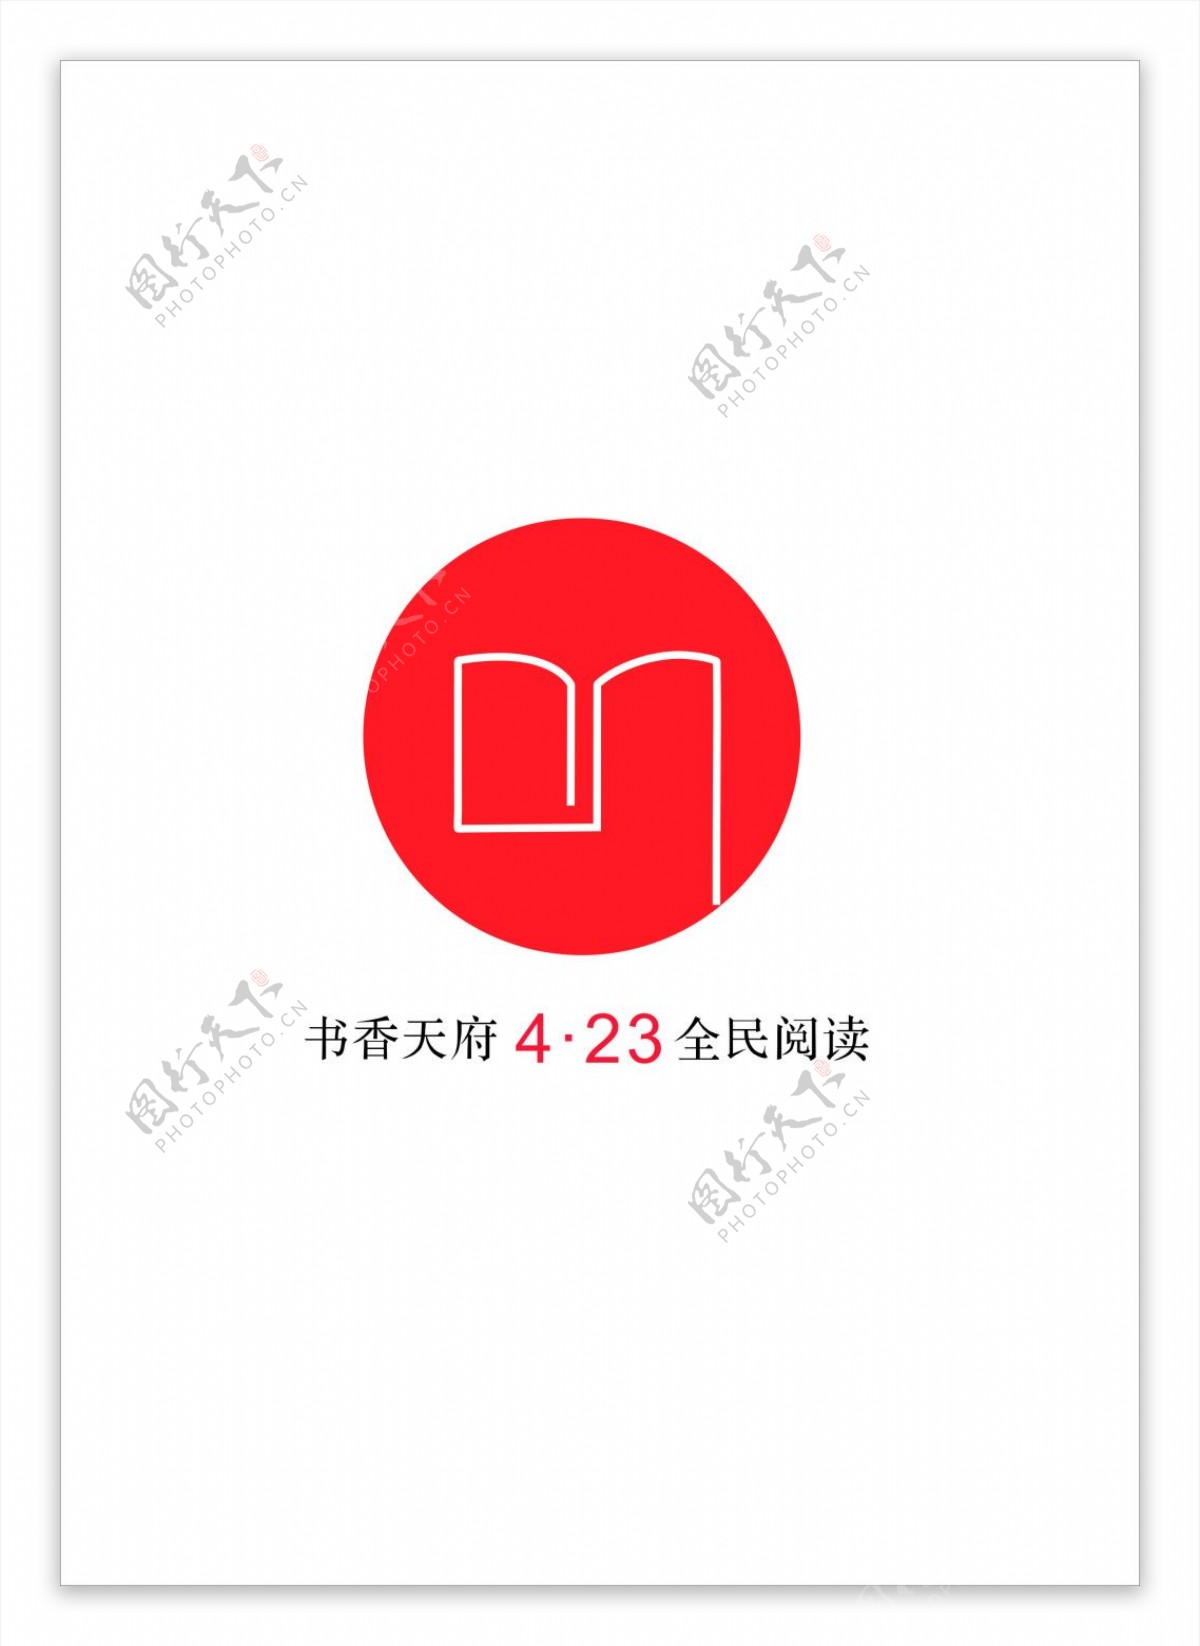 书类标志创意矢量logo